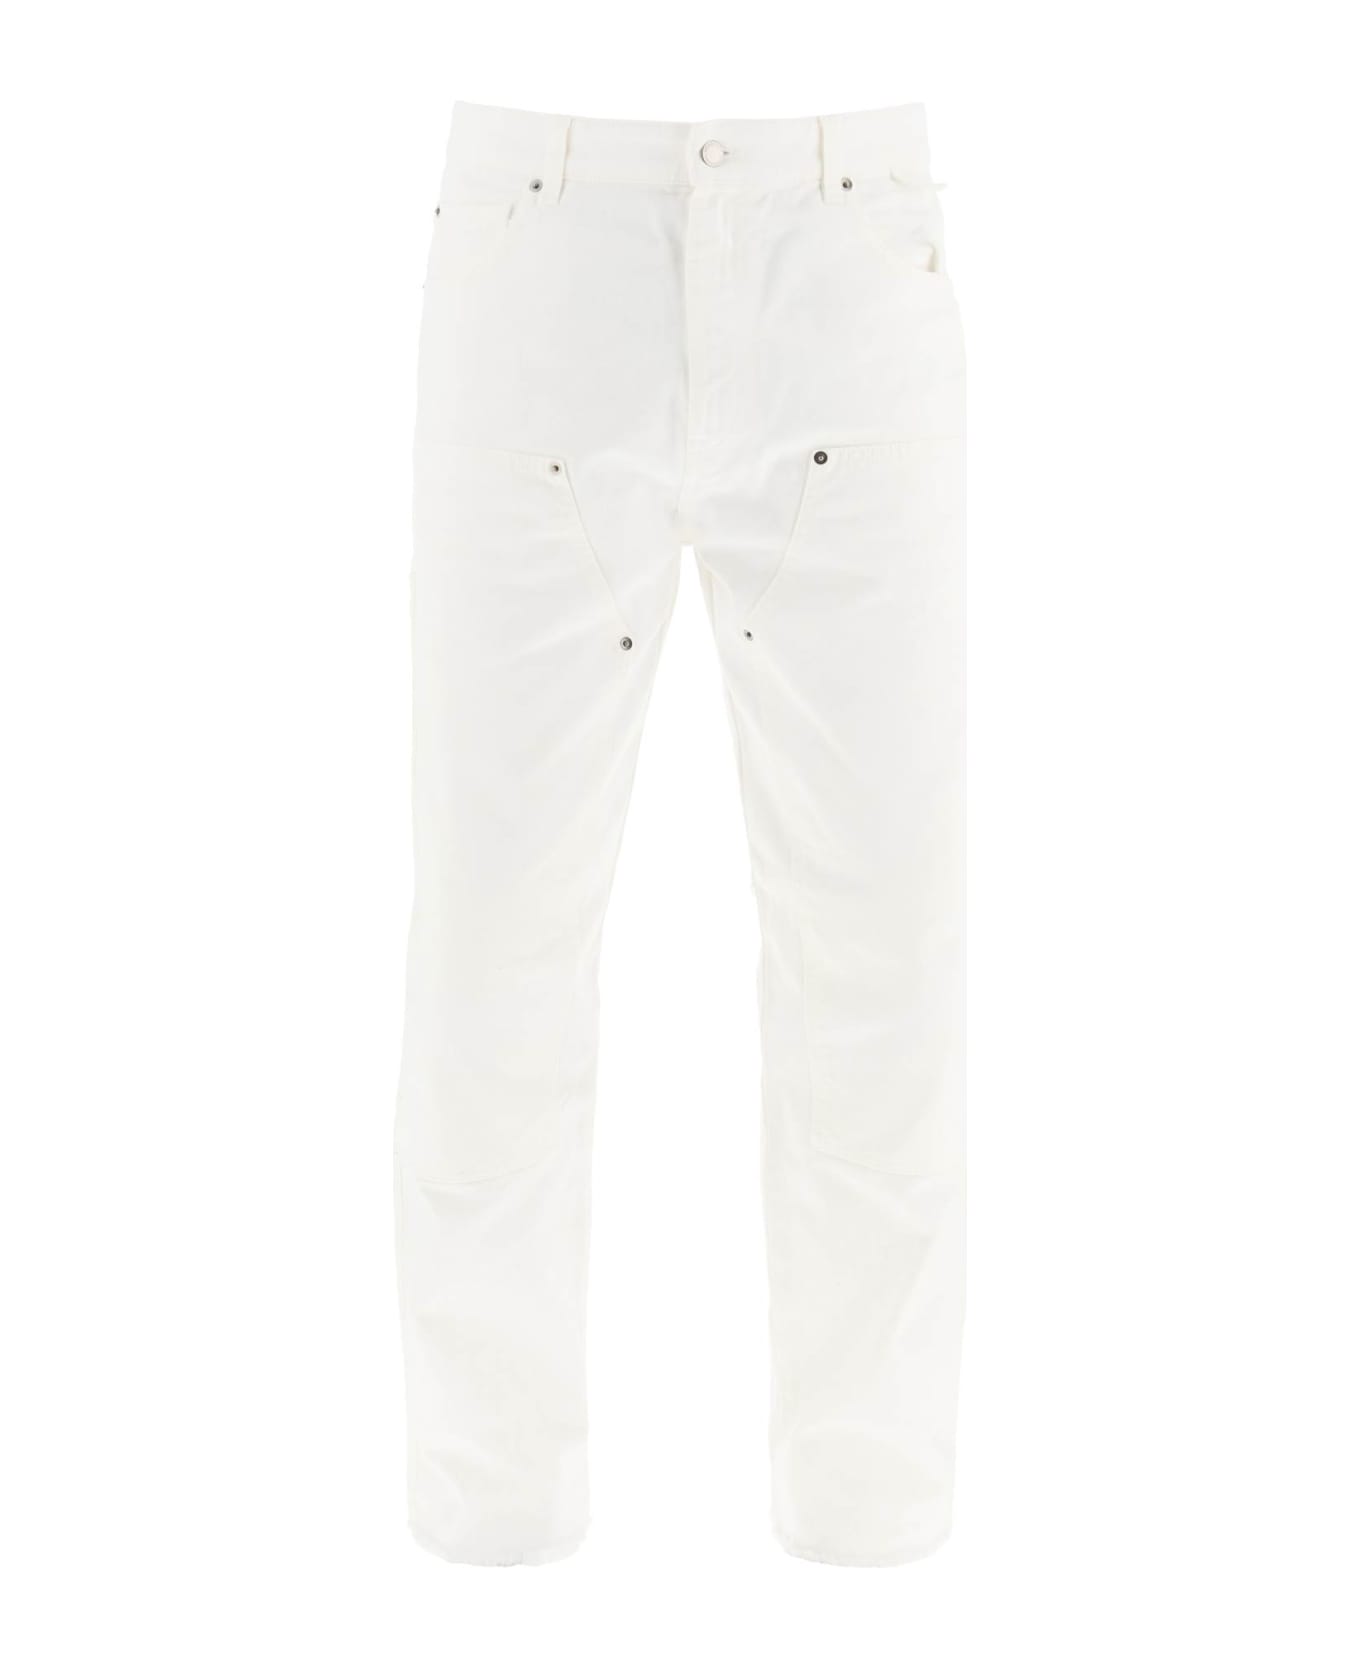 DARKPARK 'john' Carpenter Jeans - DIRTY WHITE (White)